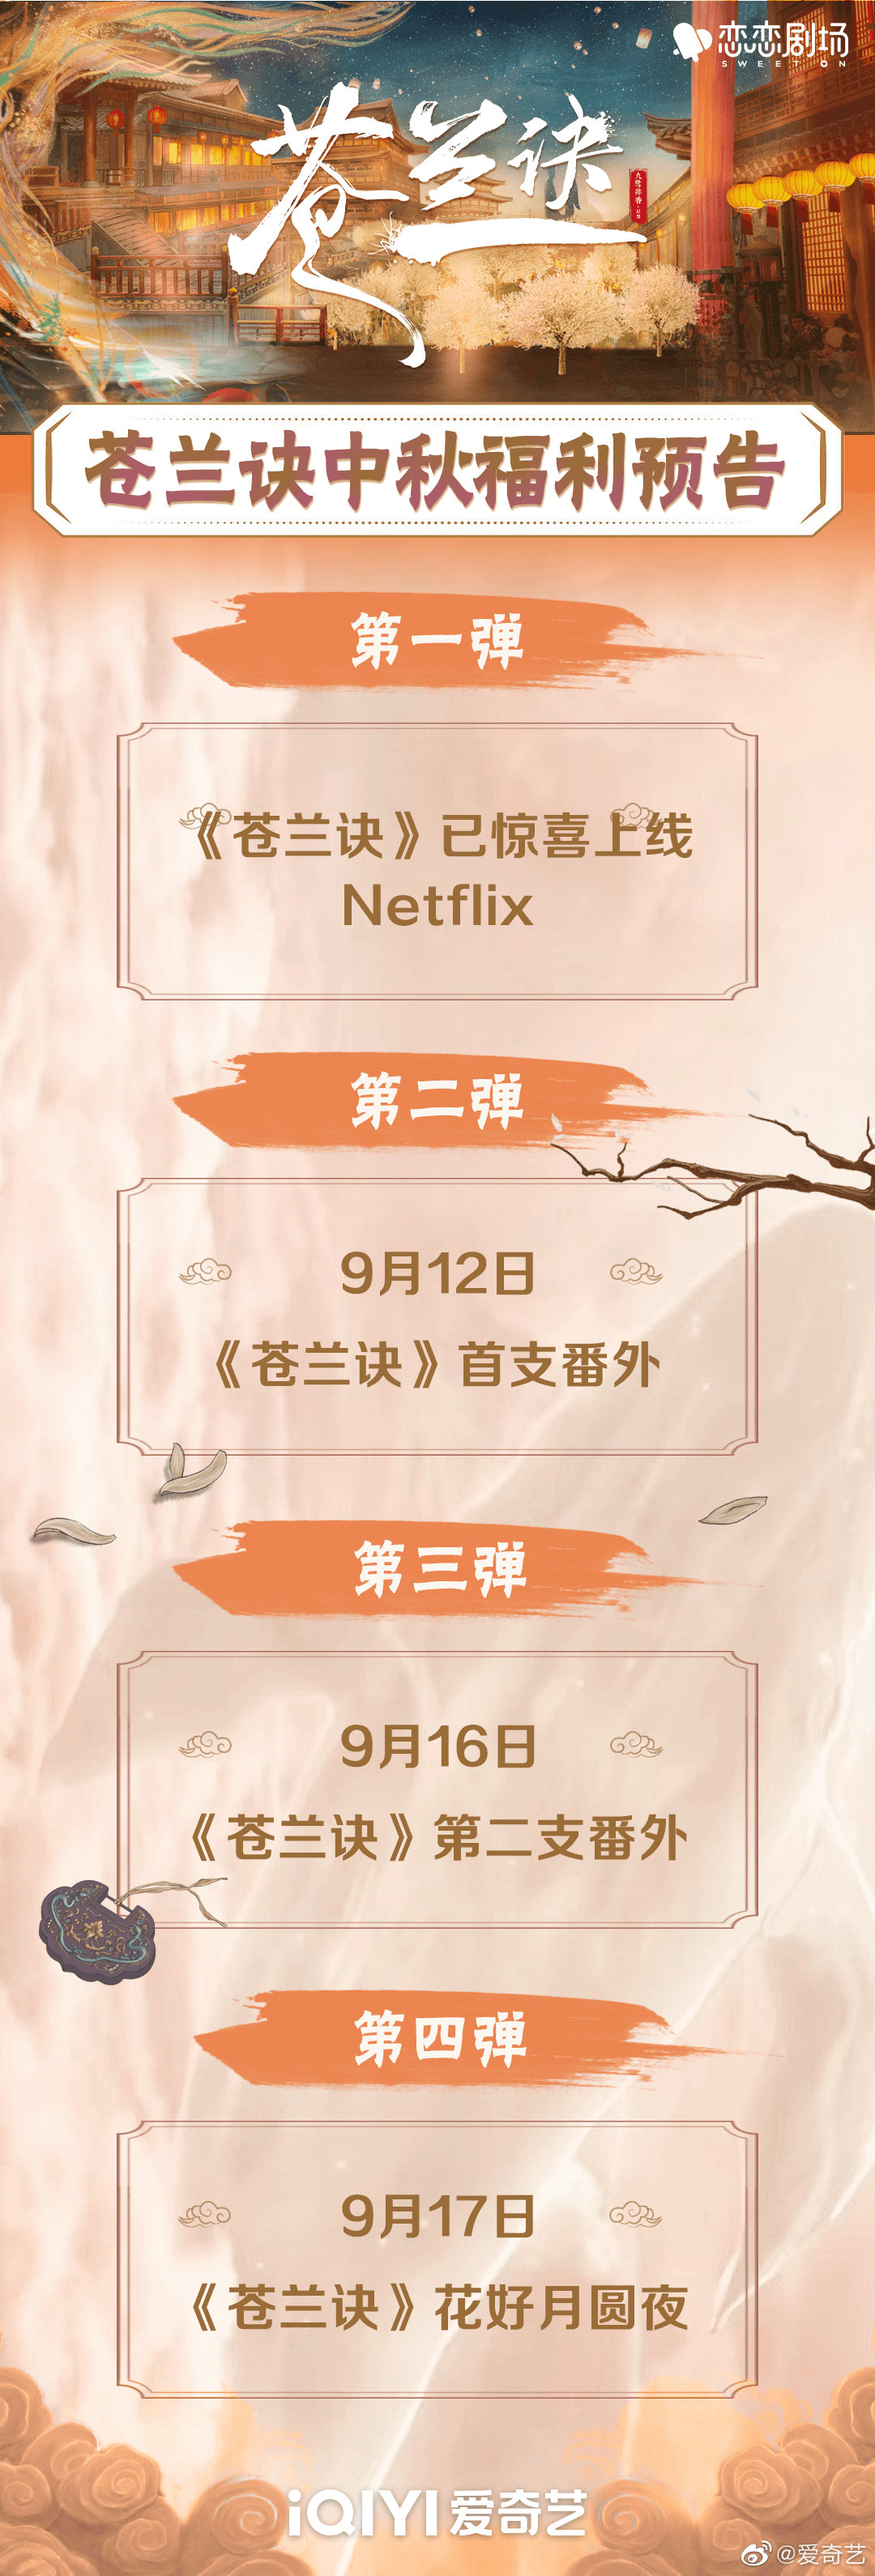 近日，爱奇艺官方微博发布了《苍兰诀》番外预告海报，官宣两支番外将分别于9月12日、16日上线。